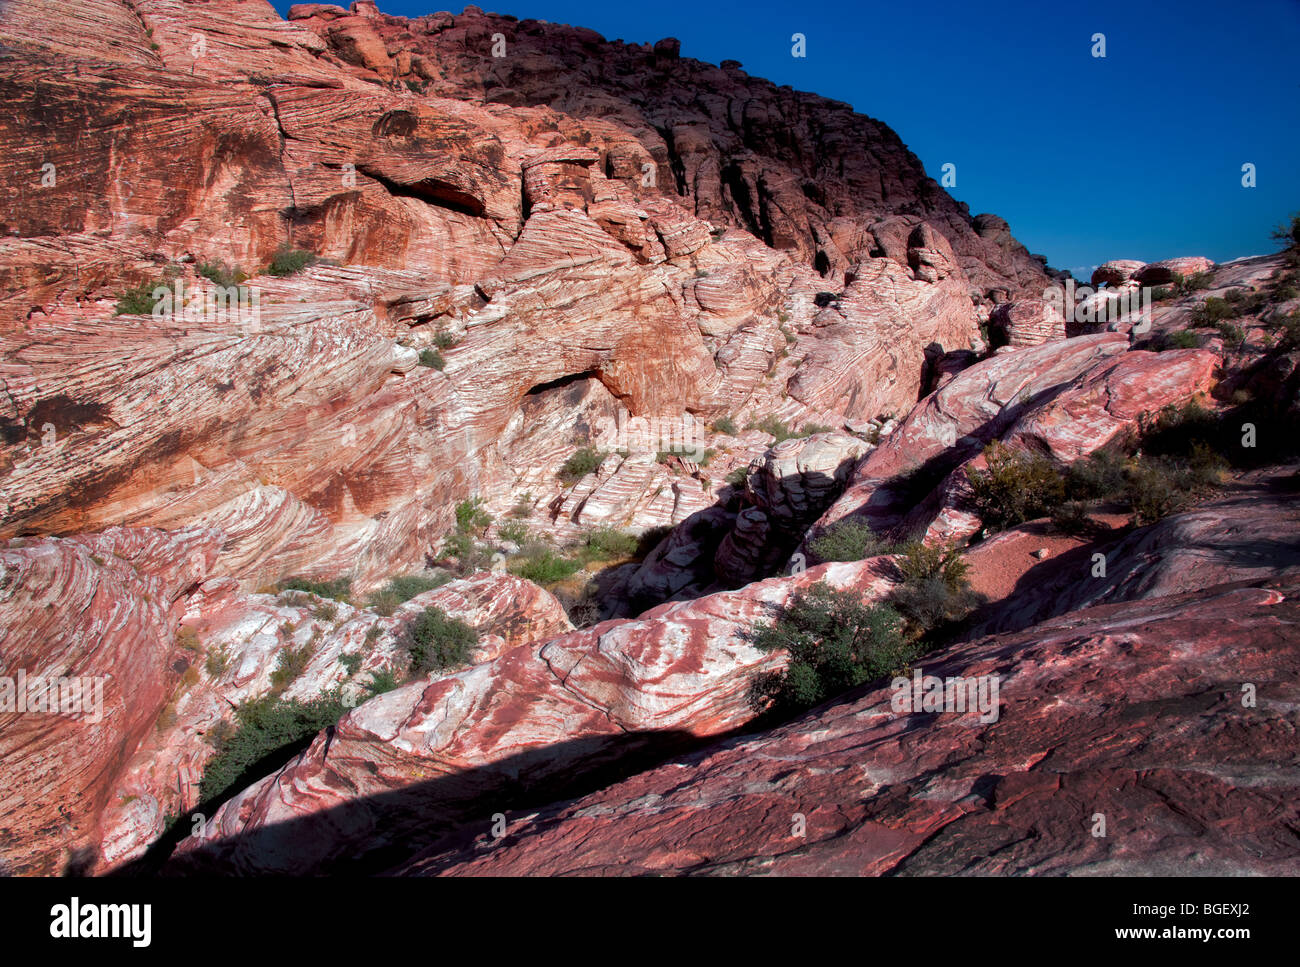 Formaciones rocosas en el Area de Conservación Nacional de Red Rock Canyon, Nevada Foto de stock